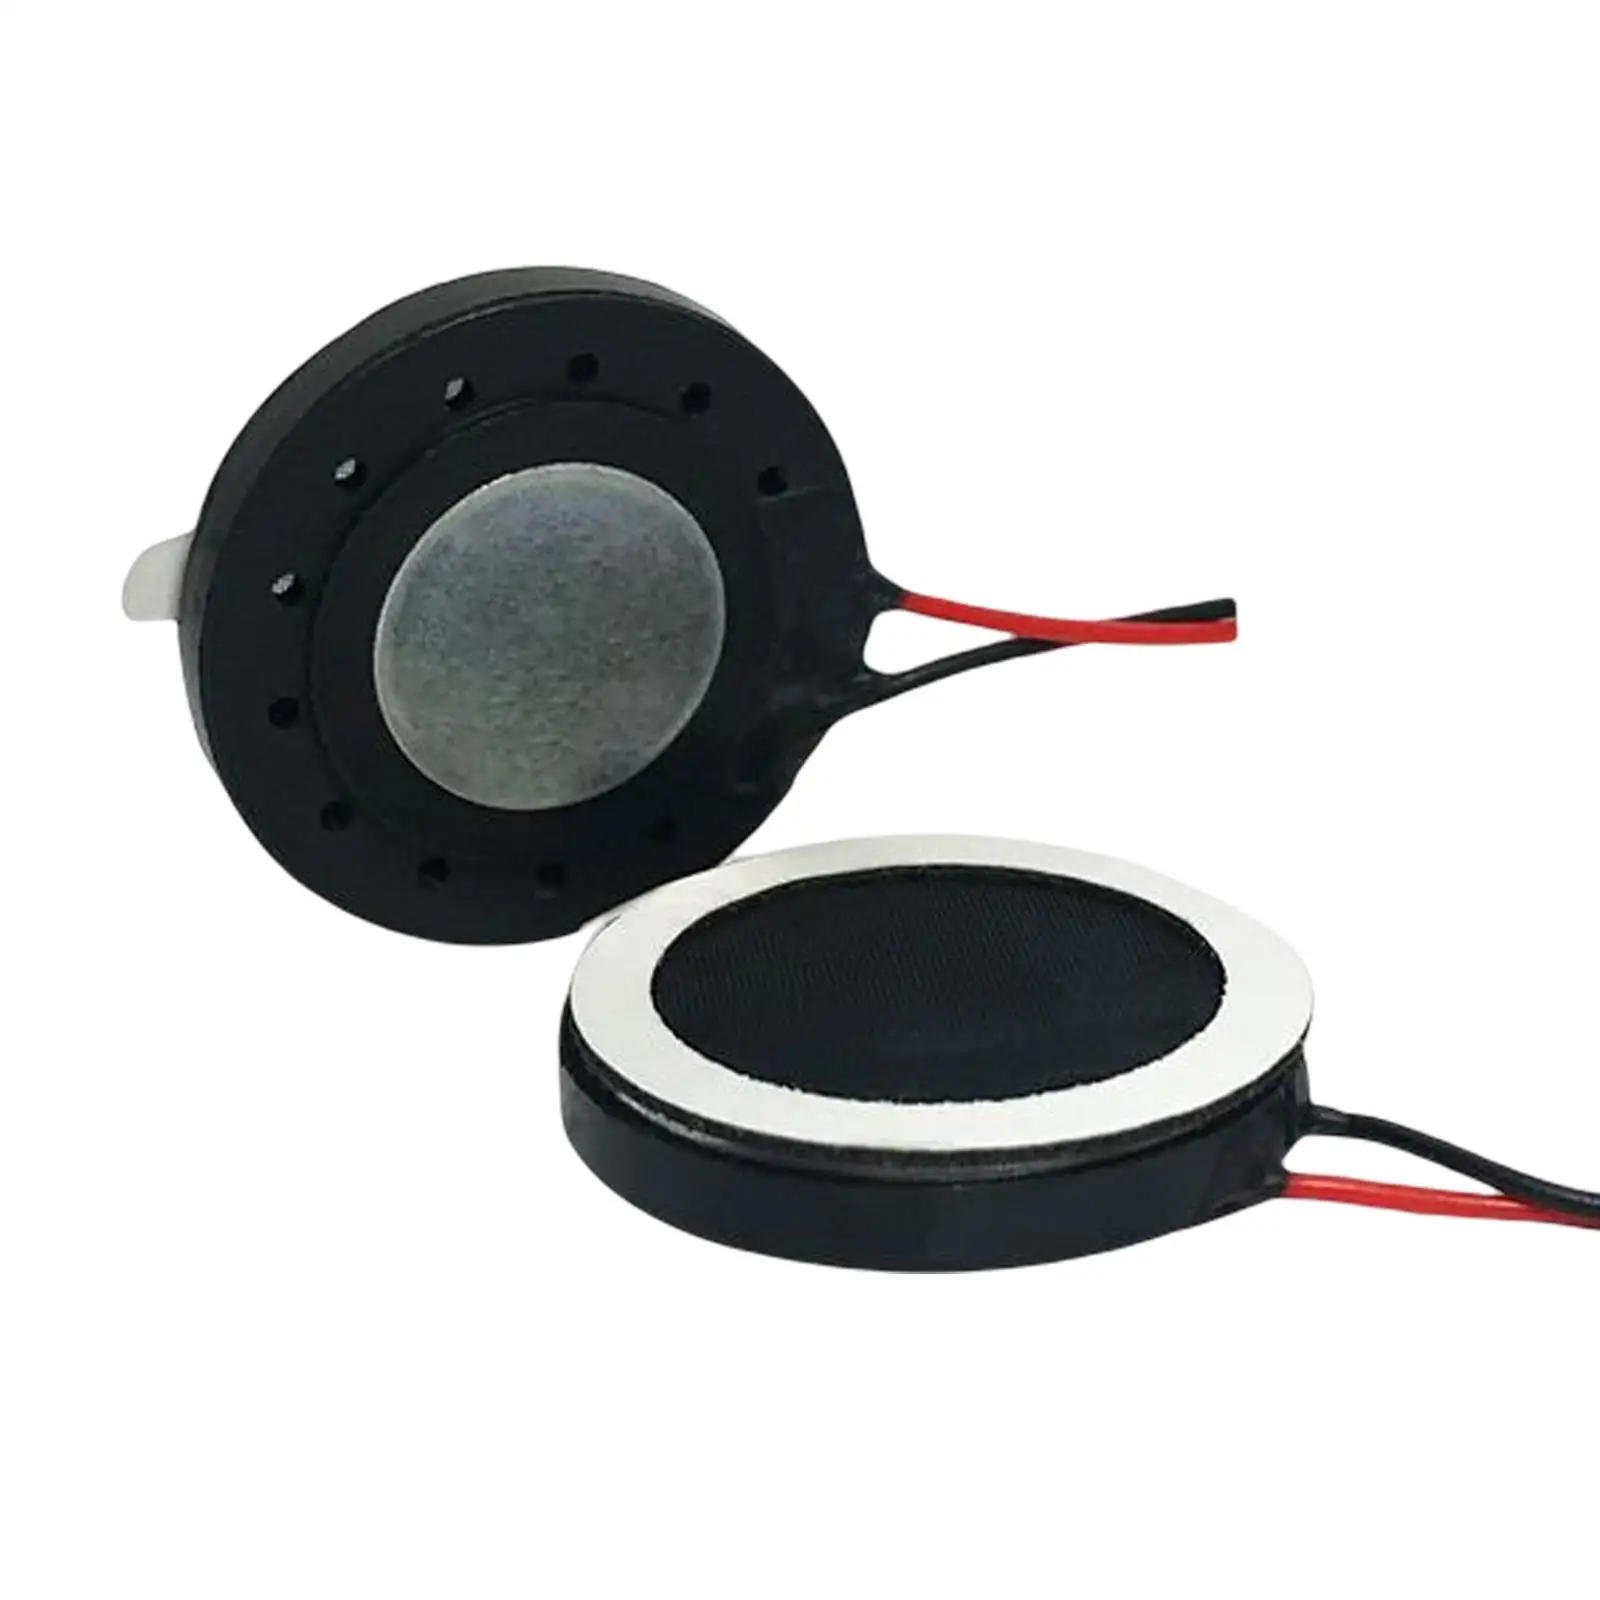 2Pcs 1W 8 Ohm Internal Magnet Speaker Buzzer Small Speaker for Fingerprint Lock Speaker Toys Audio Parts Micro Internal Speaker